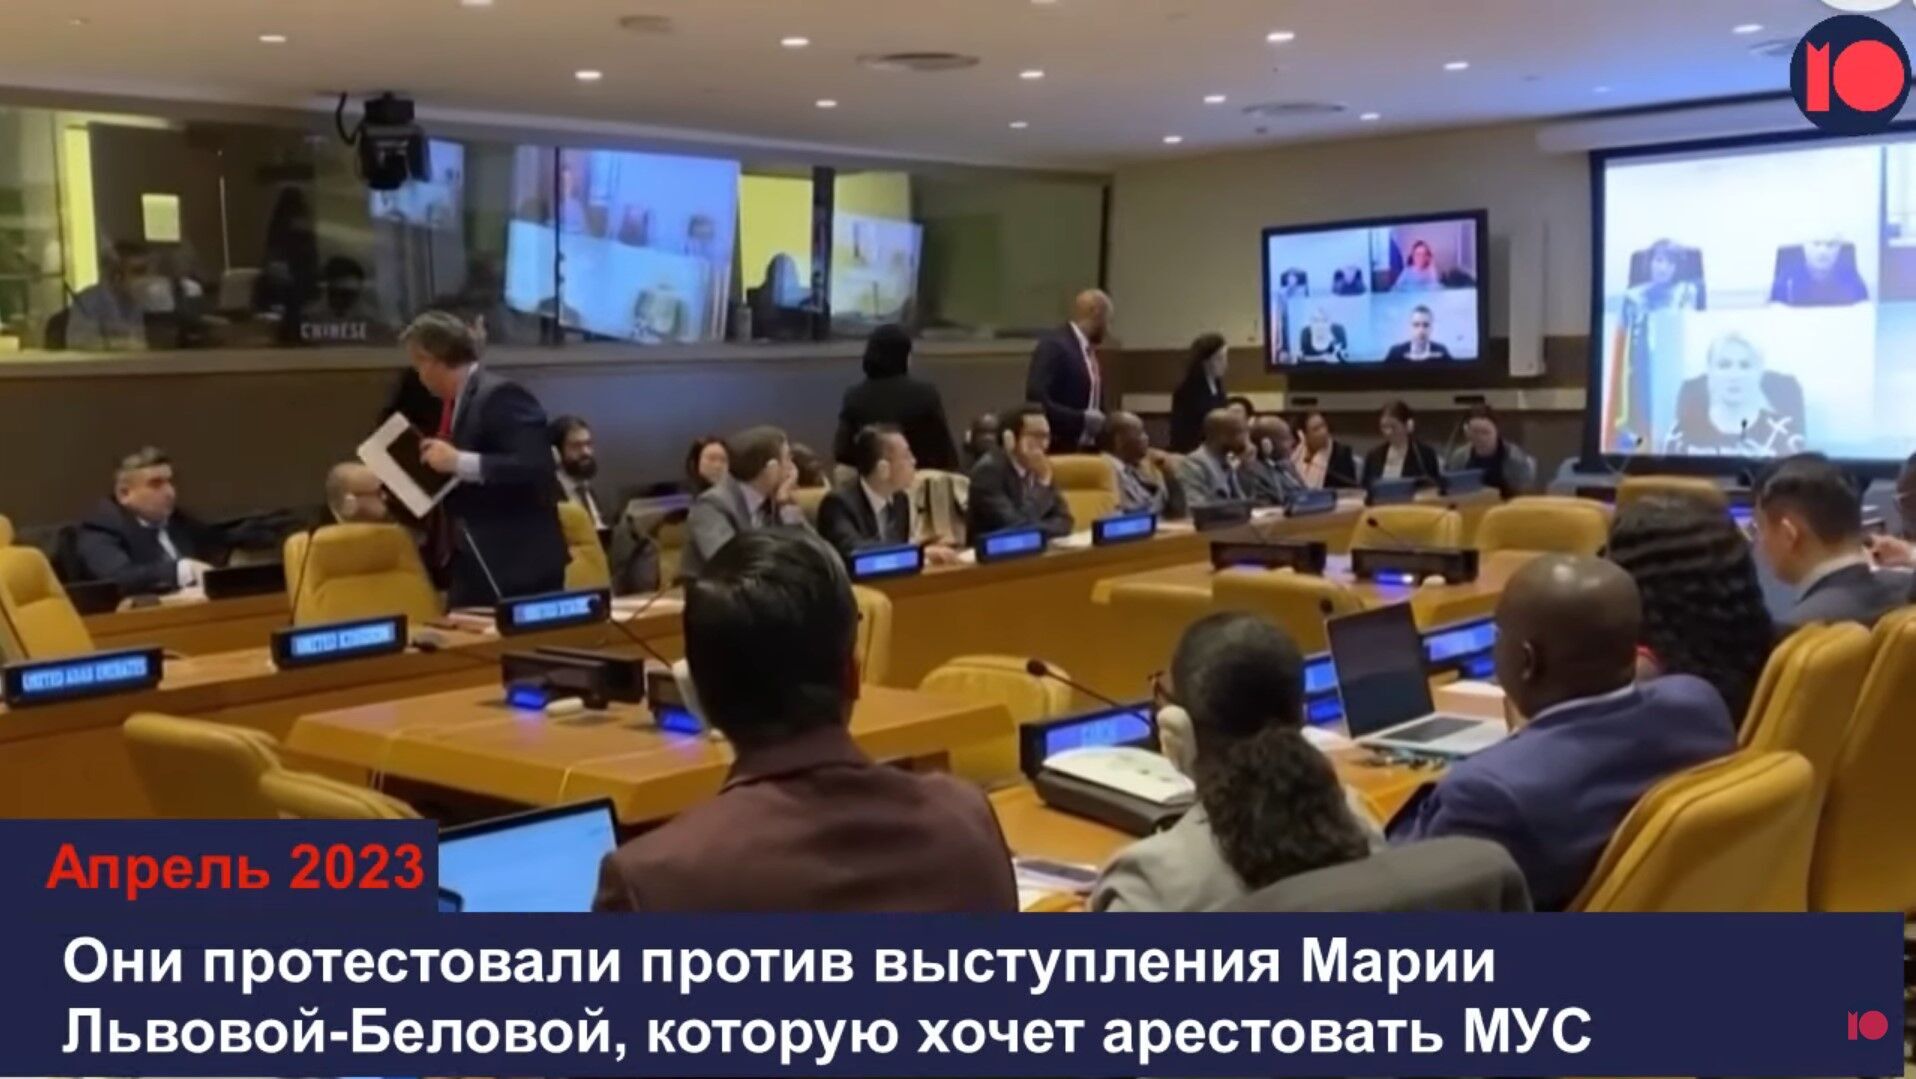 Российские дипломаты стали изгоями в мире, столкнувшись с бойкотом и насмешками: унижения показали на видео